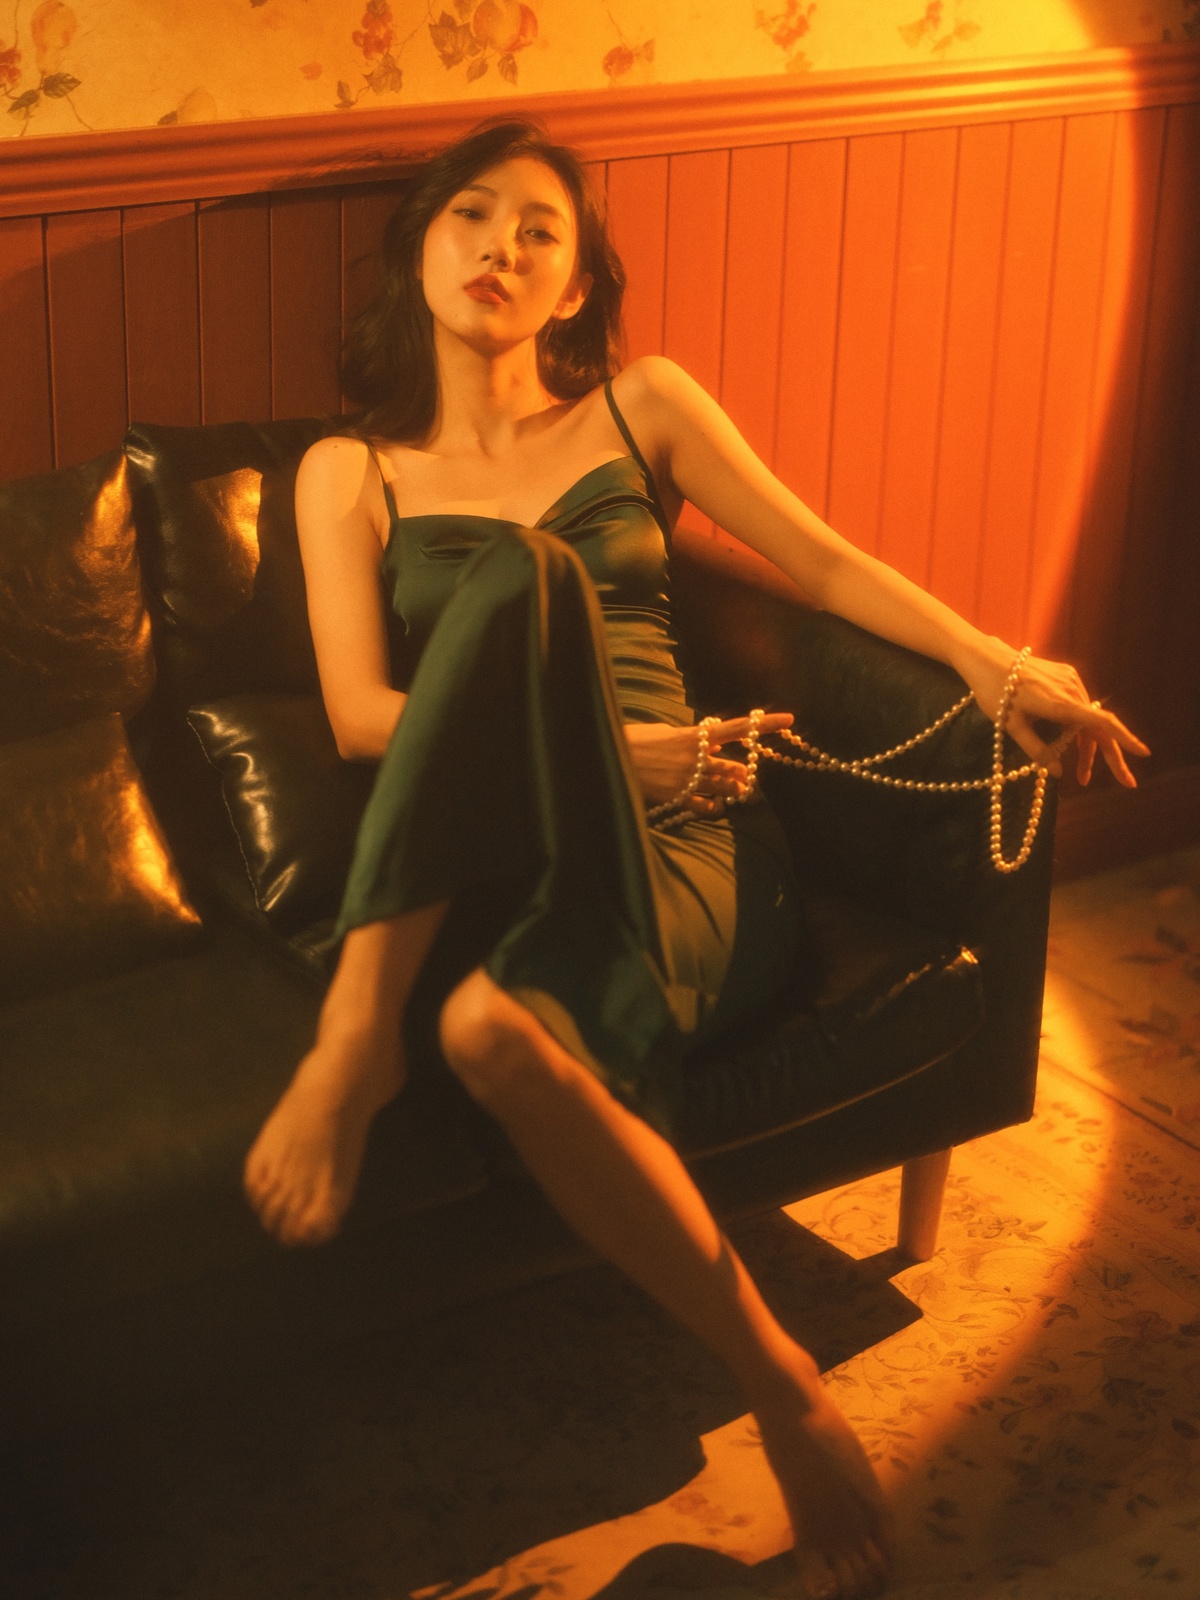 一个穿着绿色连衣裙的年轻女子坐在沙发上 双腿交叉 在一个光线昏暗的房间里。